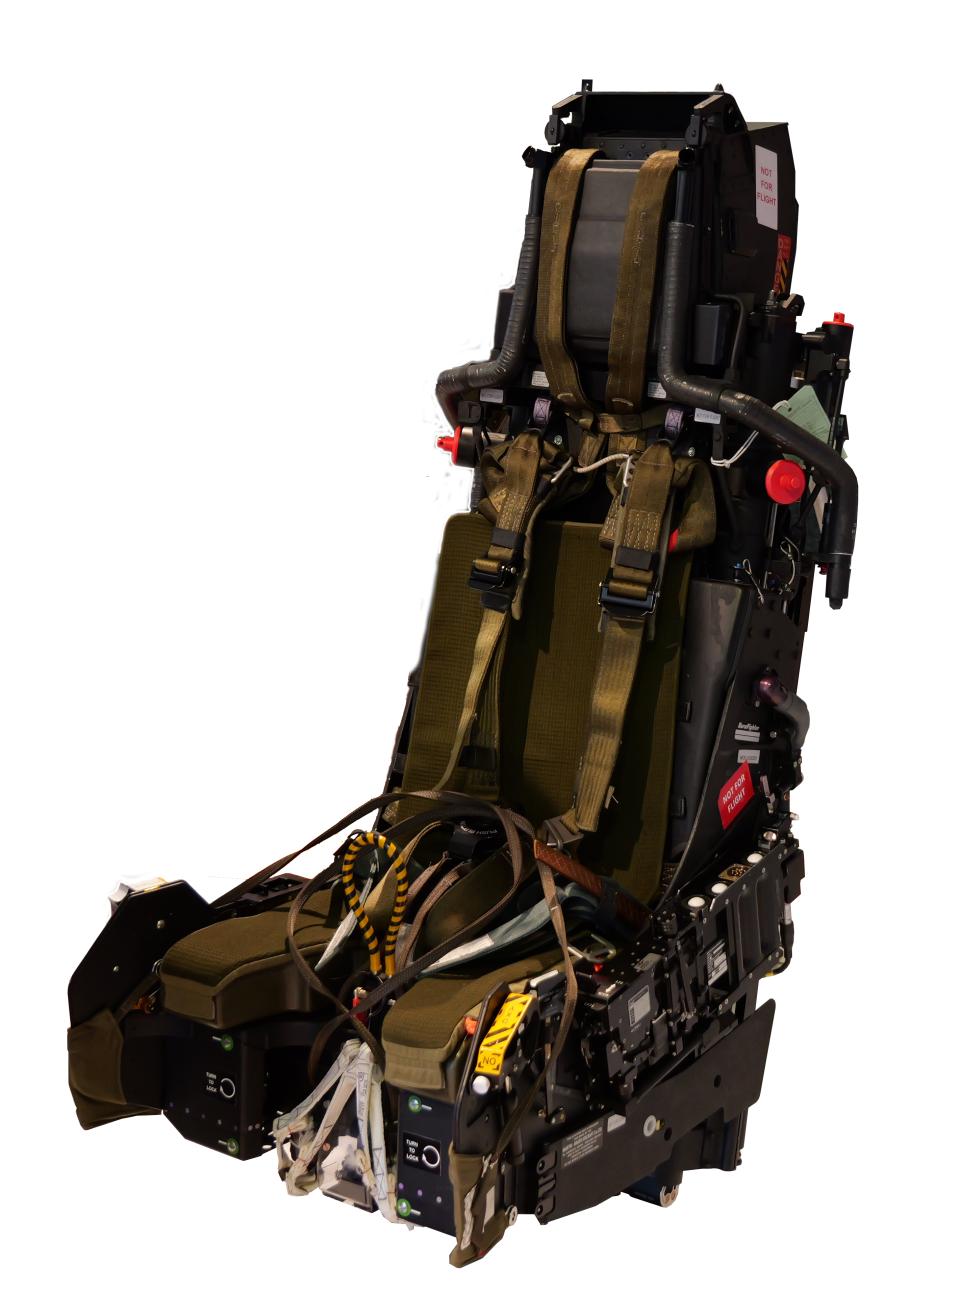 Beispiel eines modernen Schleudersitzes
(Modell Mk16 von Martin-Baker)